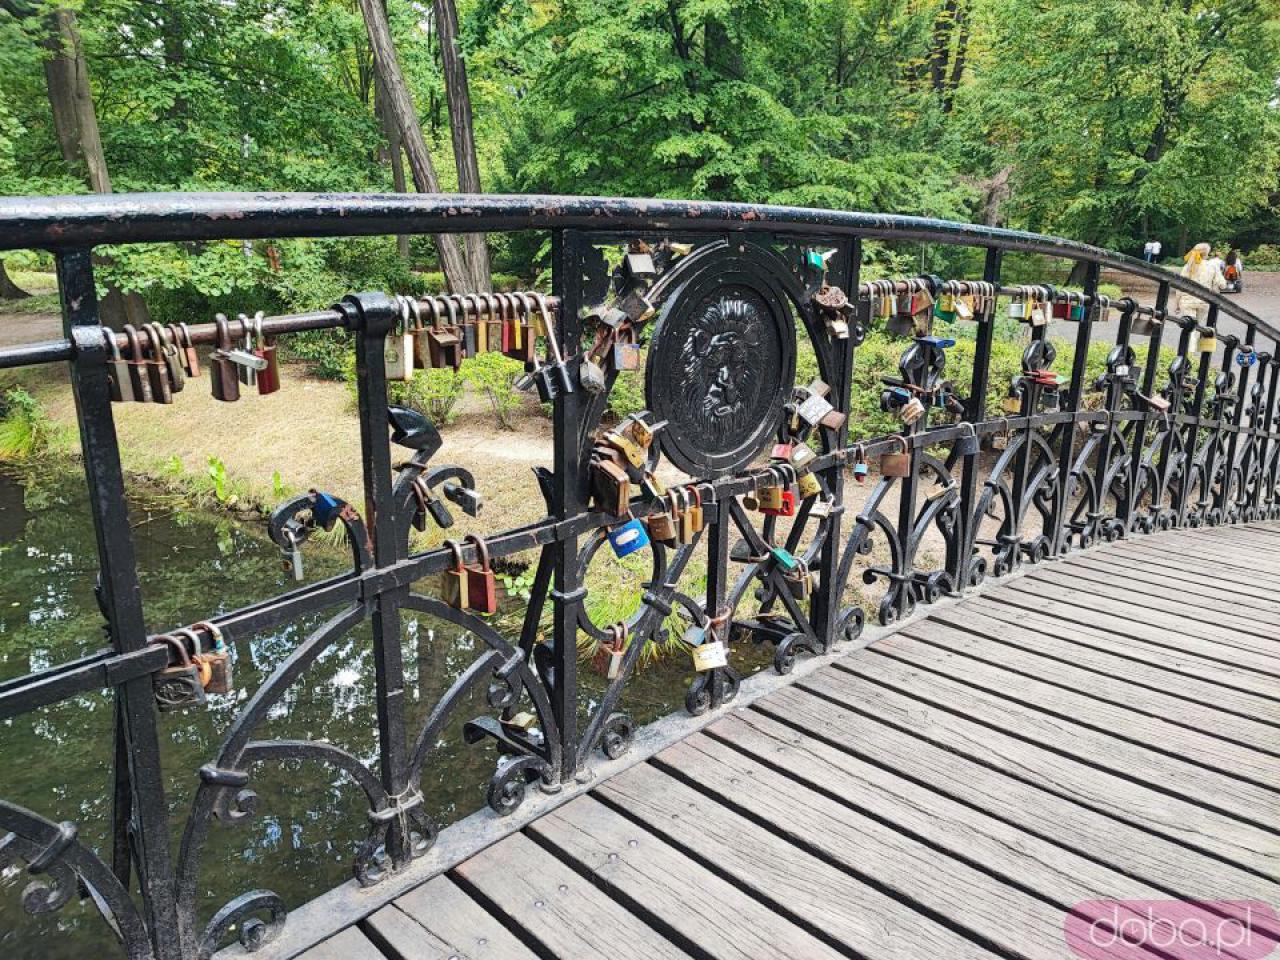 Kłódki zakochanych znikną z mostku w Parku Szczytnickim. To ostatni moment, by je zdjąć